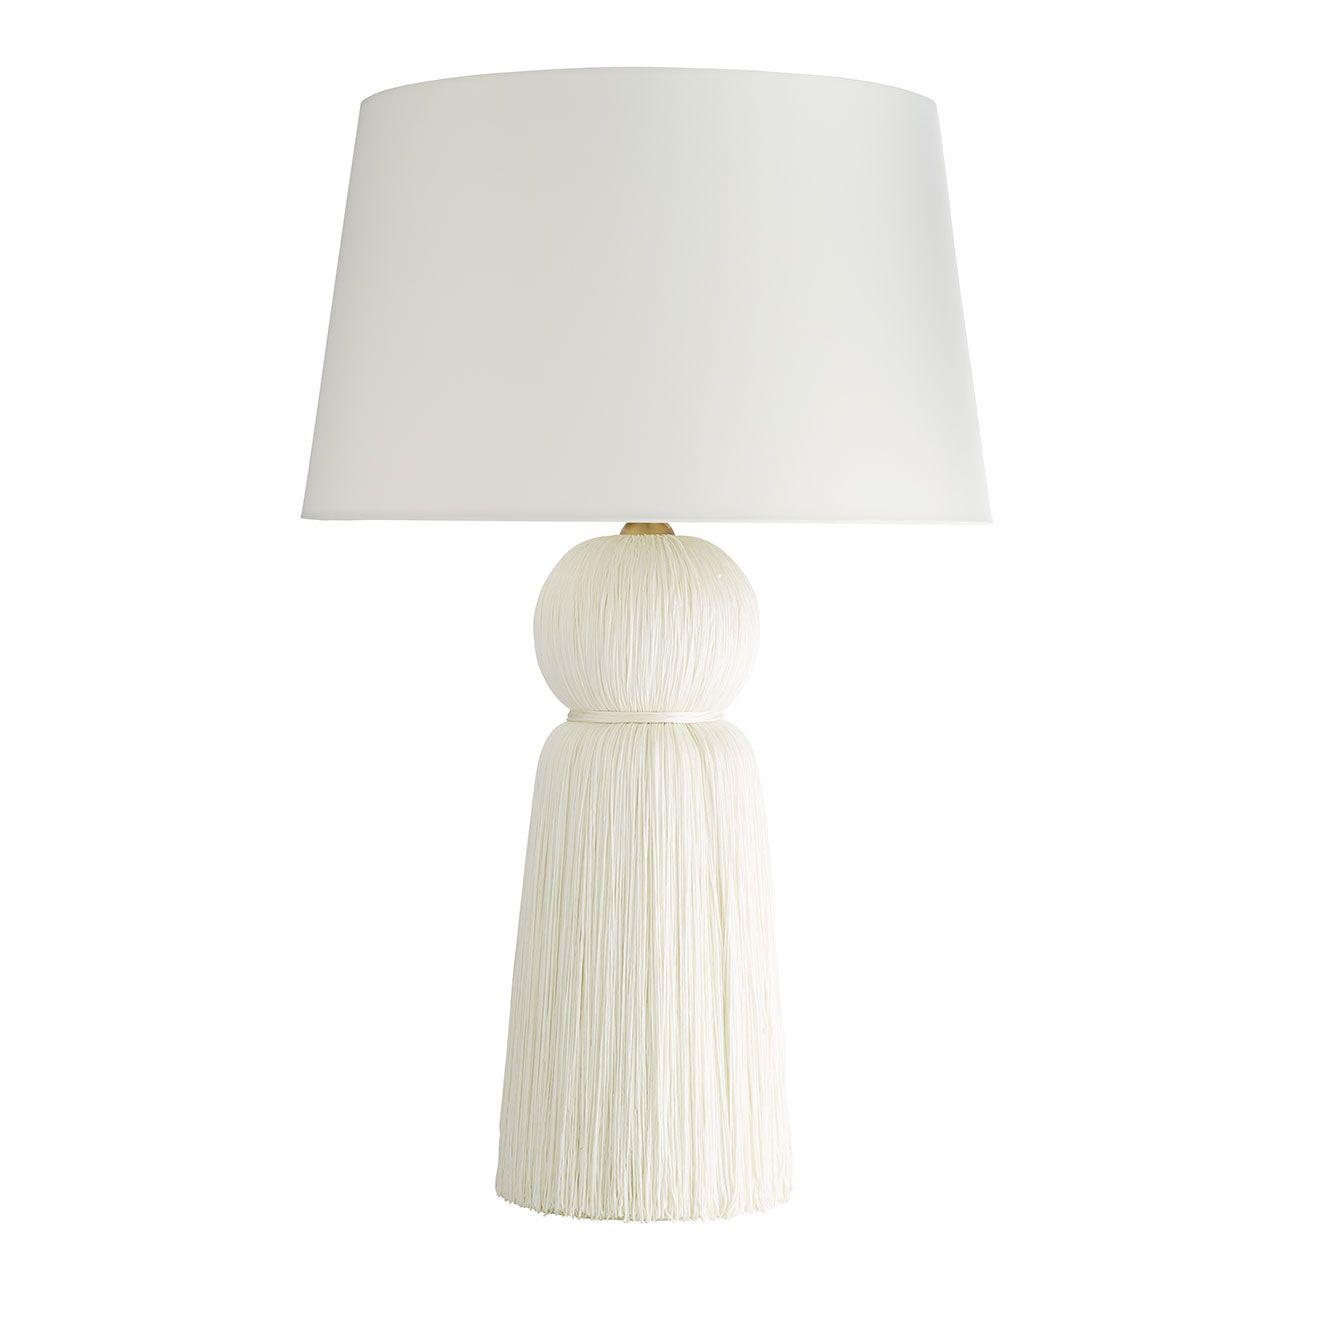 Купить Настольная лампа Tassel Lamp в интернет-магазине roooms.ru